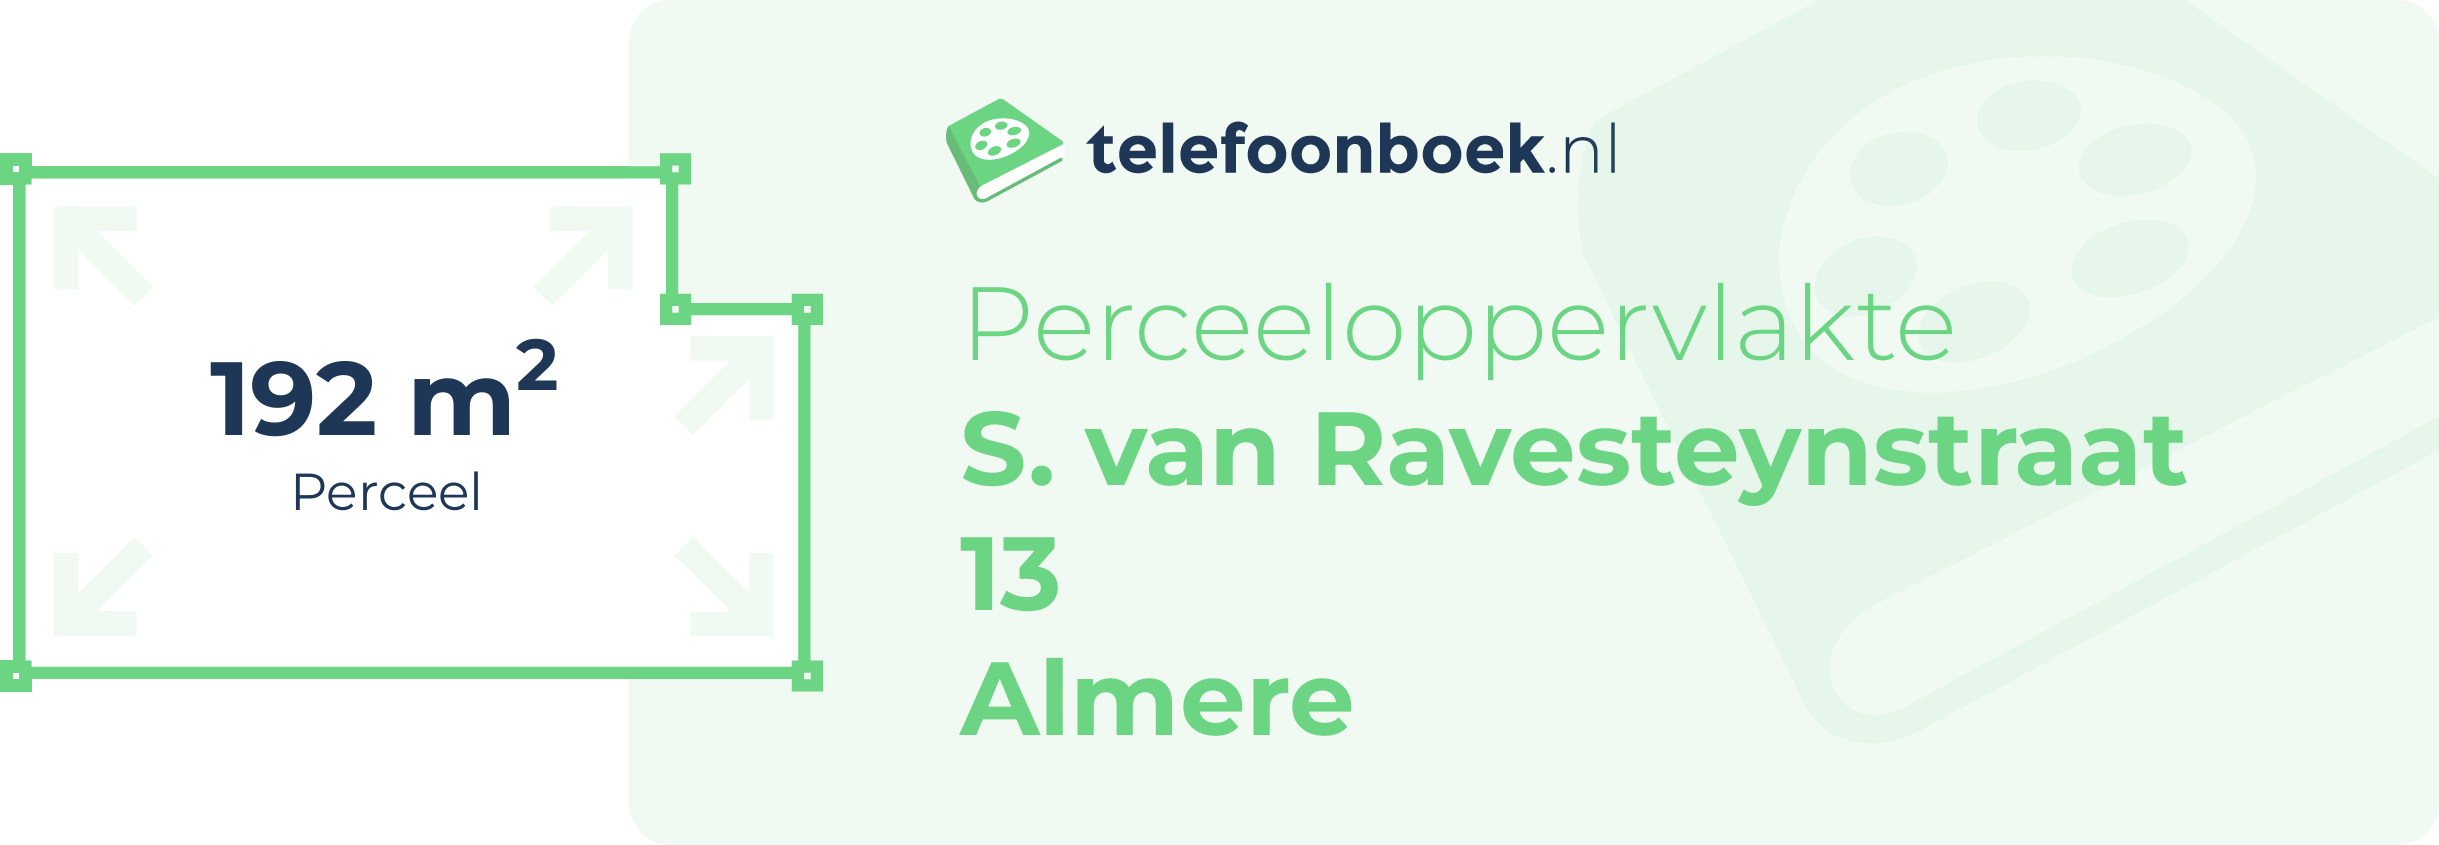 Perceeloppervlakte S. Van Ravesteynstraat 13 Almere